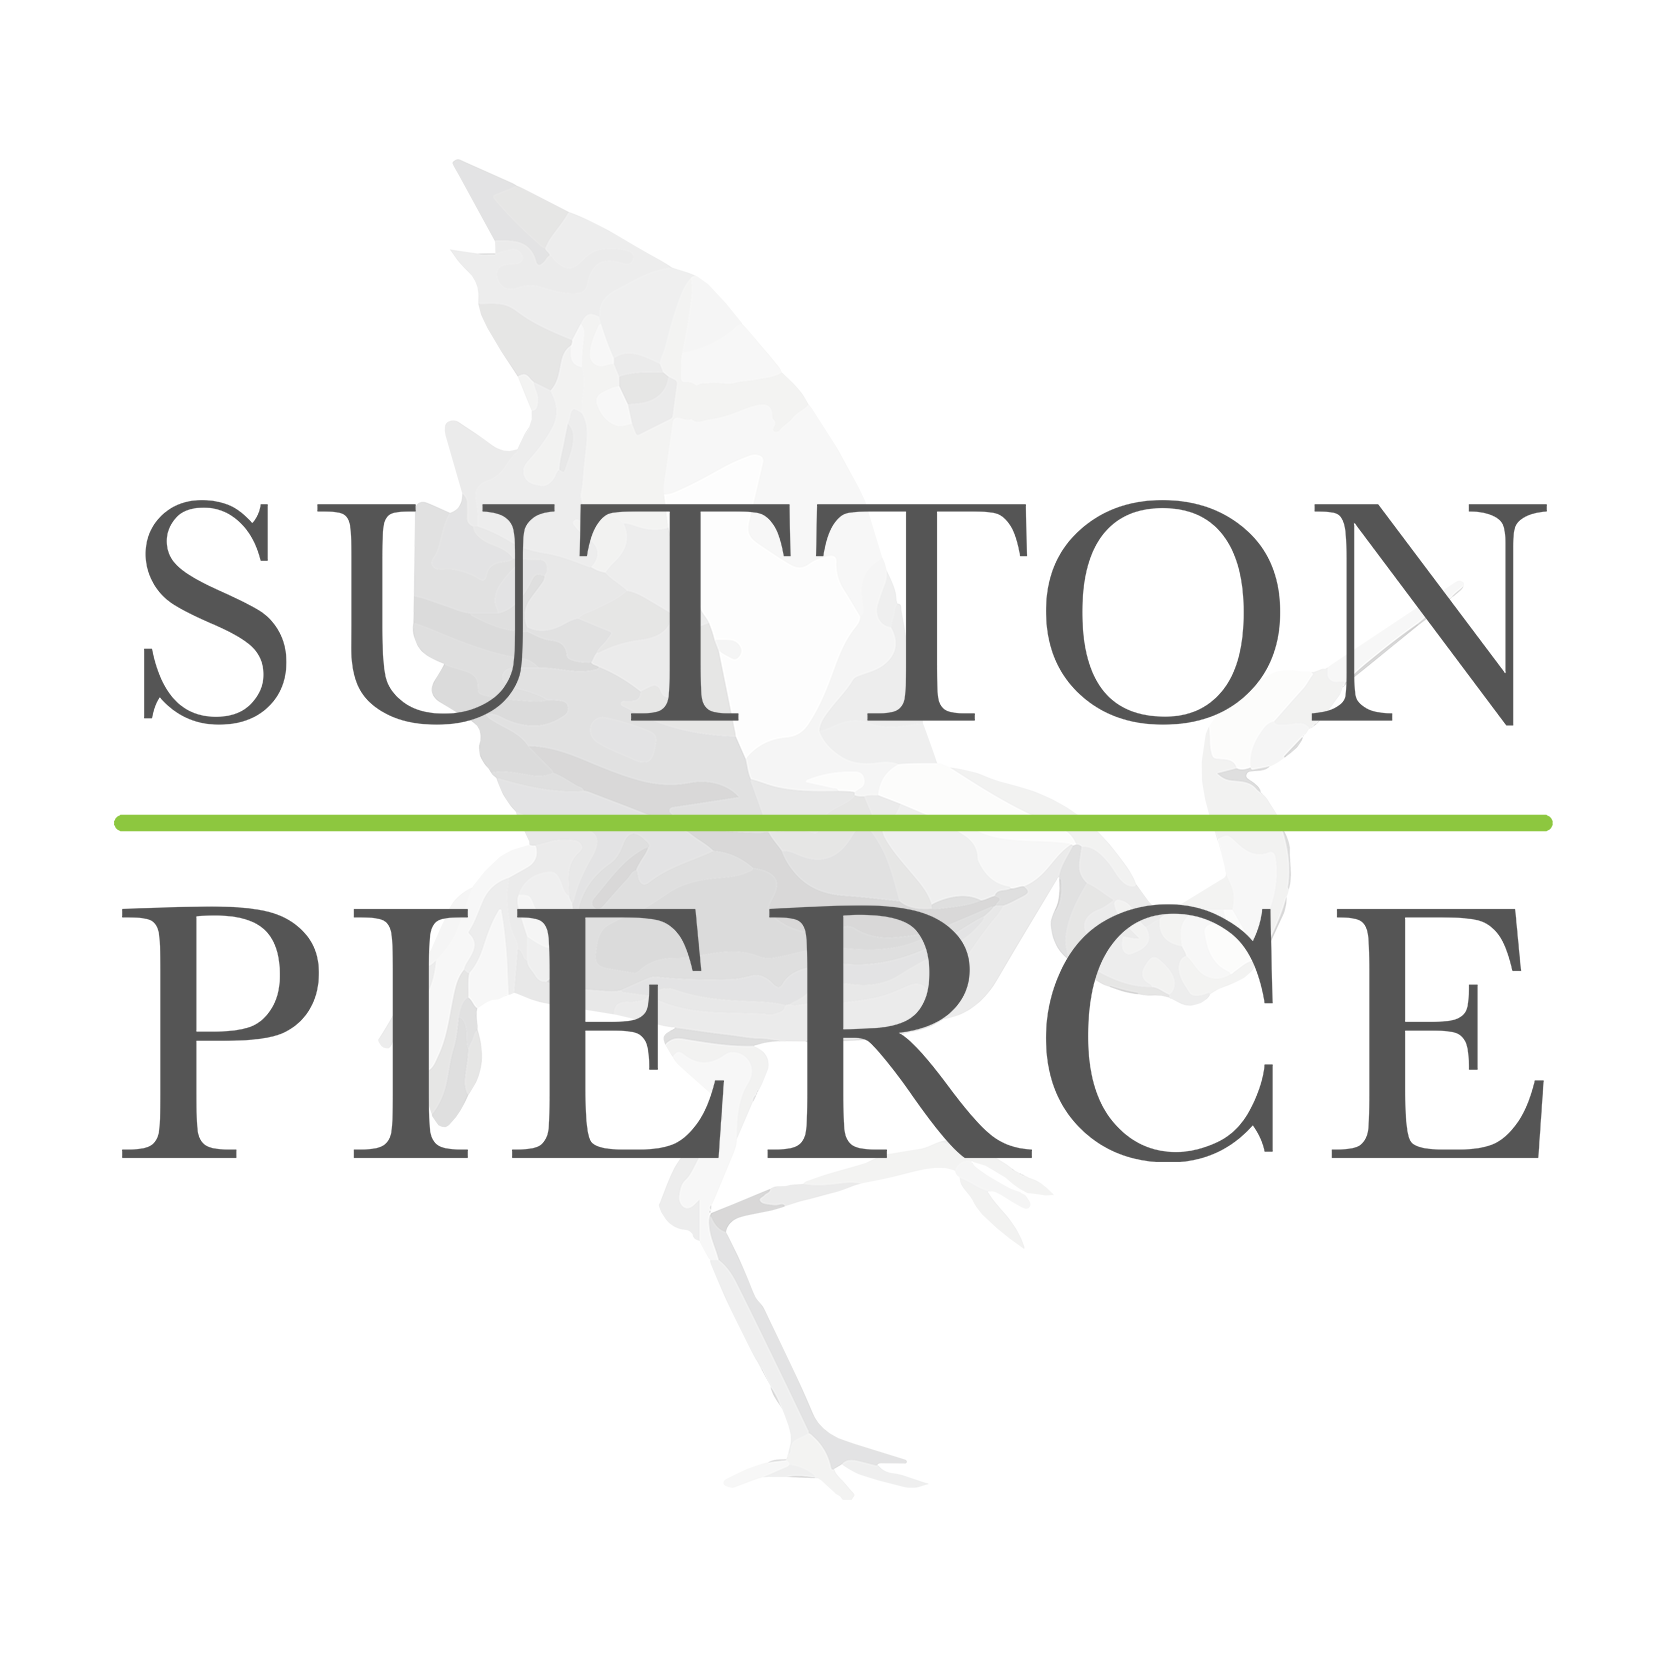 Sutton Pierce Logo